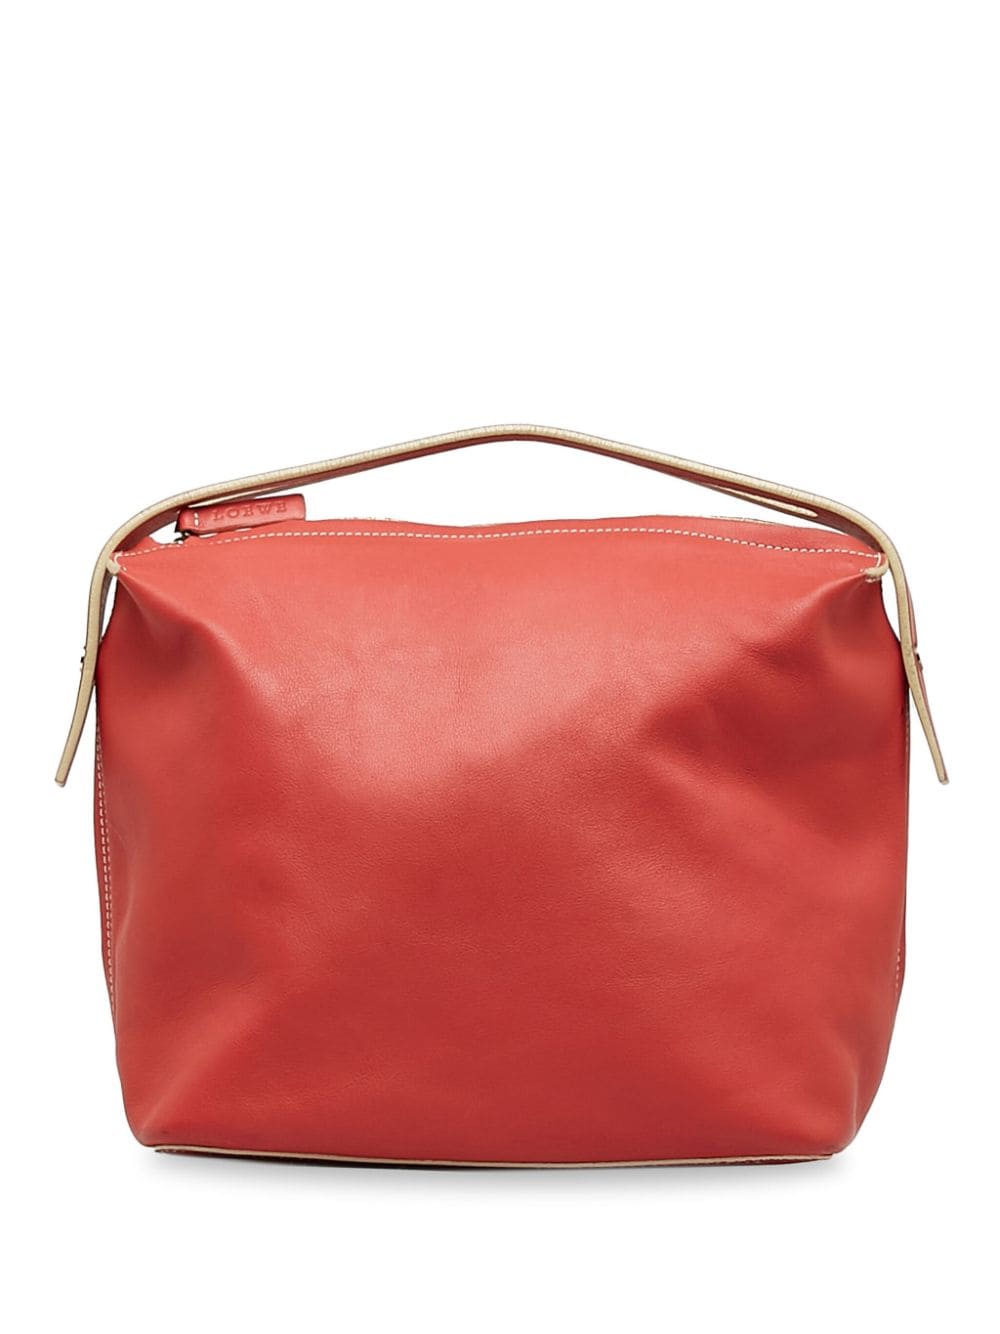 Loewe Pre-Owned contrasting leather handbag - Red von Loewe Pre-Owned